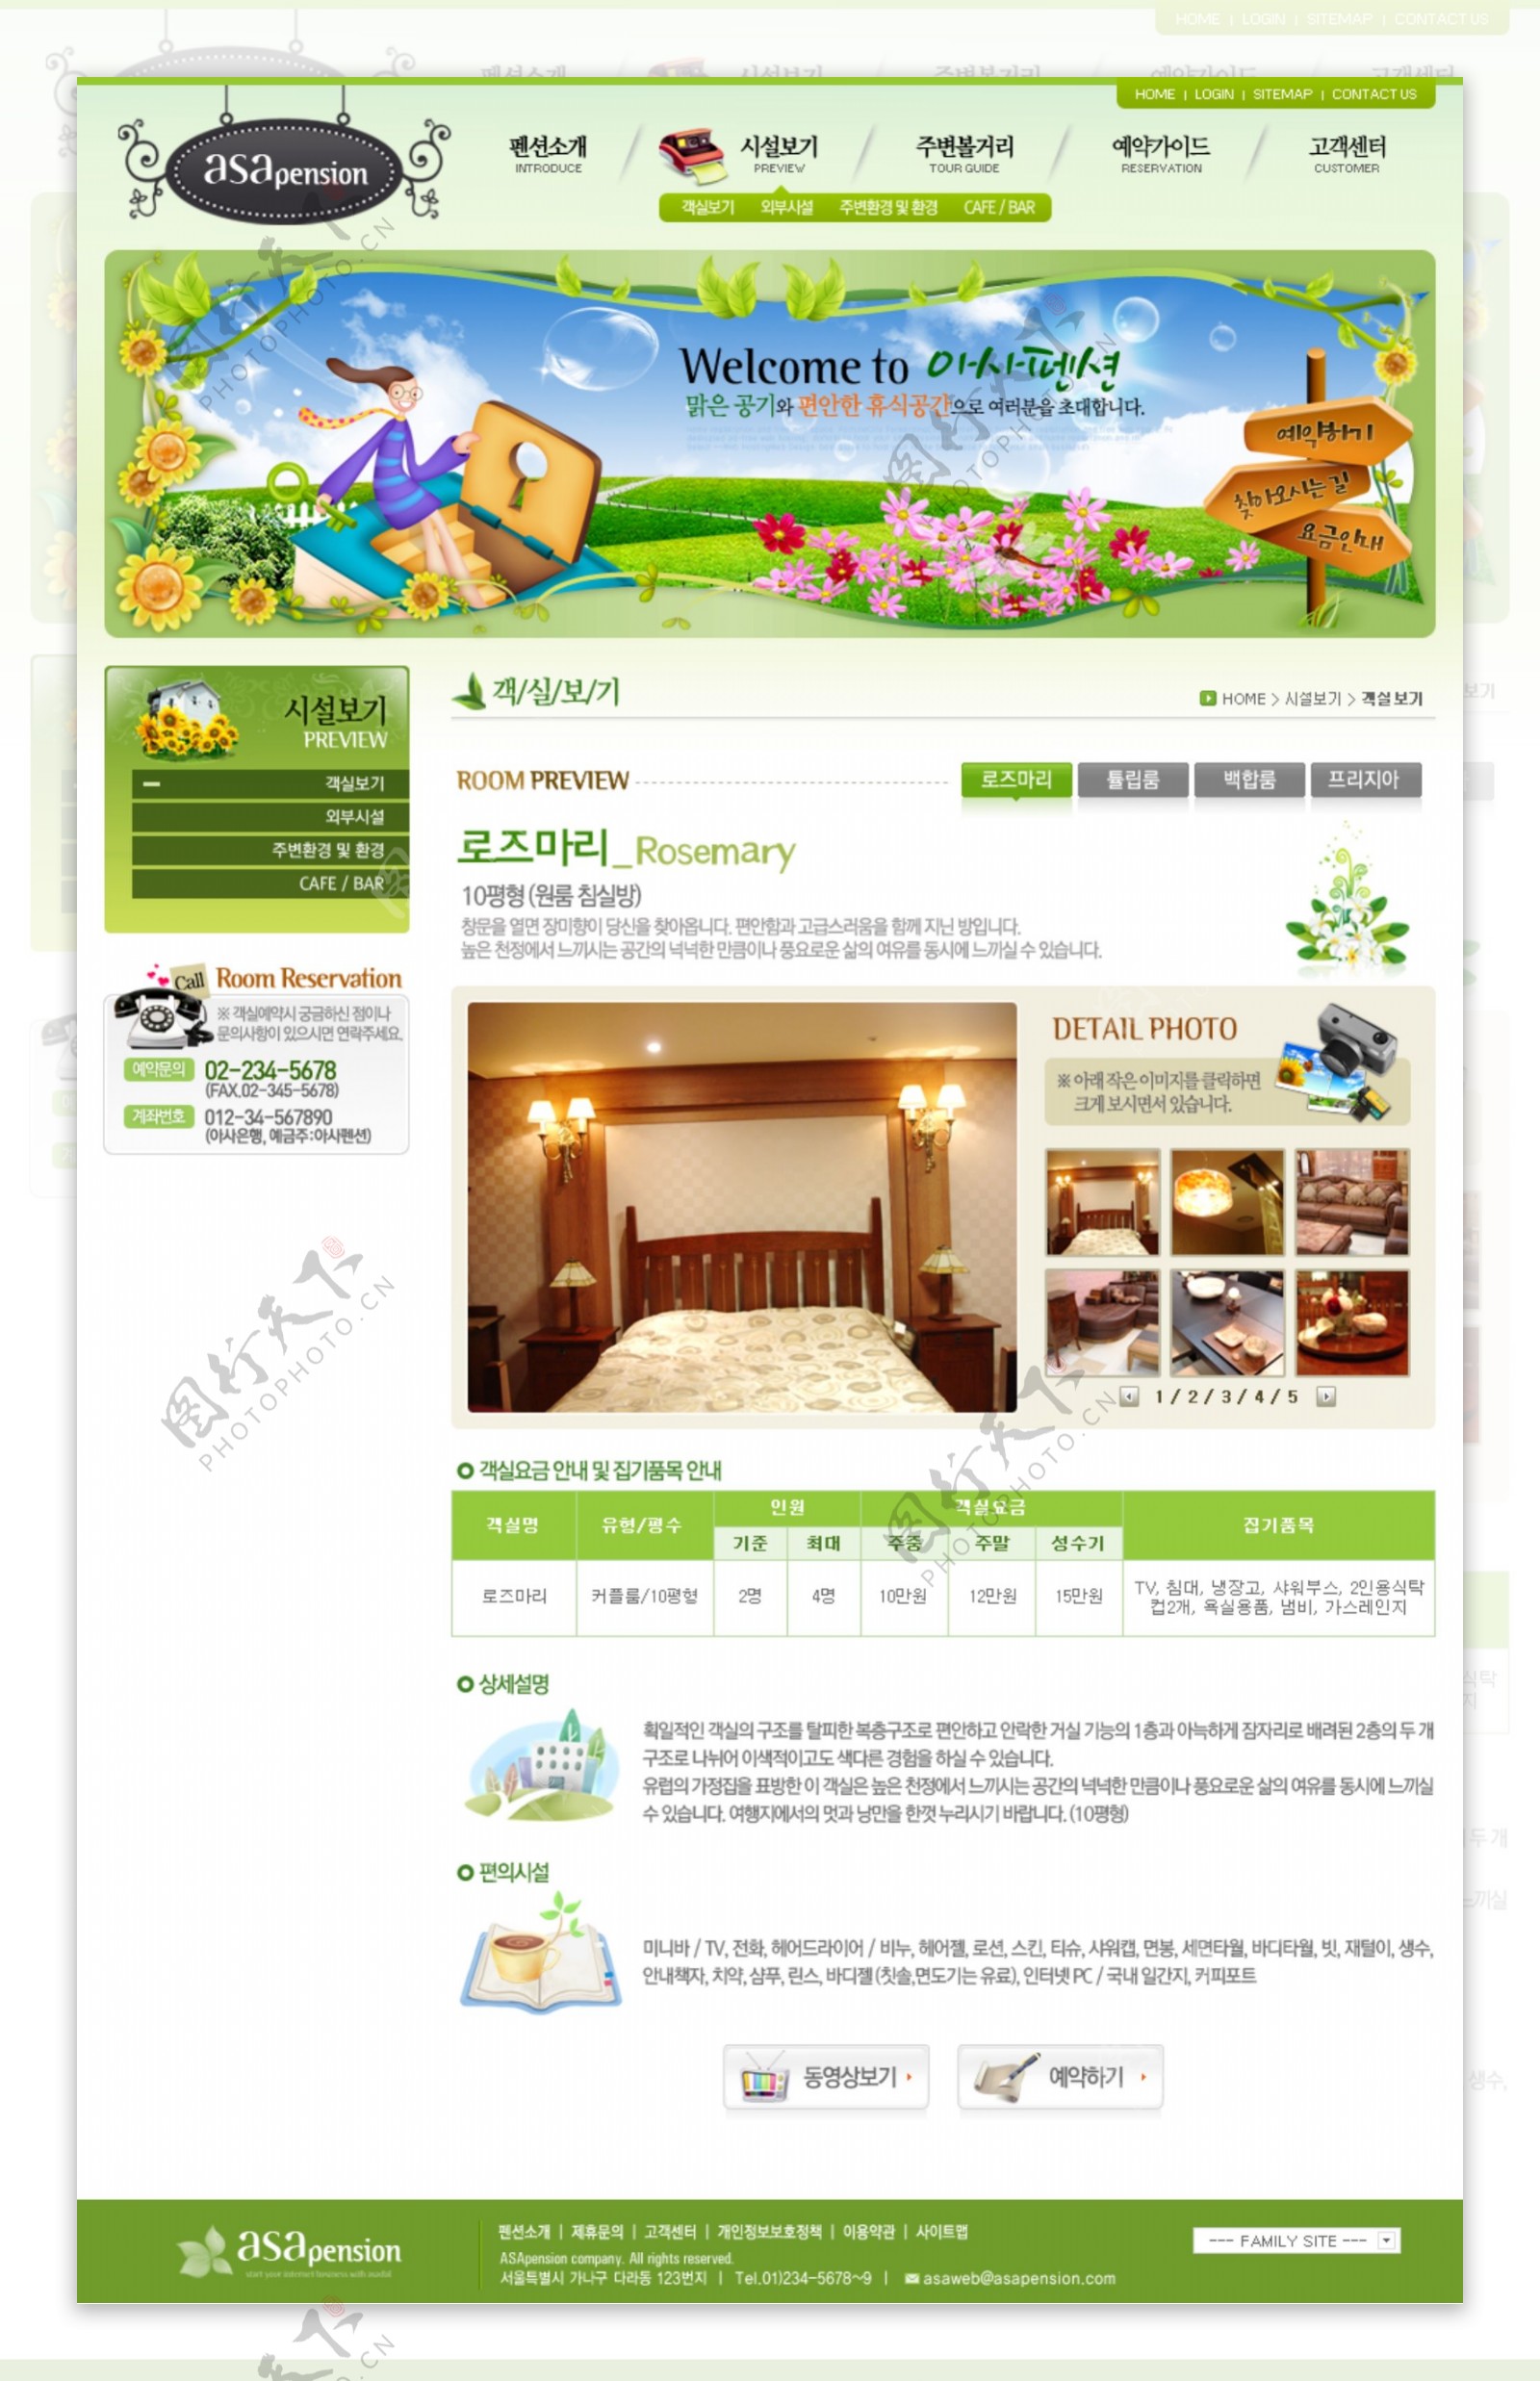 绿色简洁韩国网页模板PSD分层